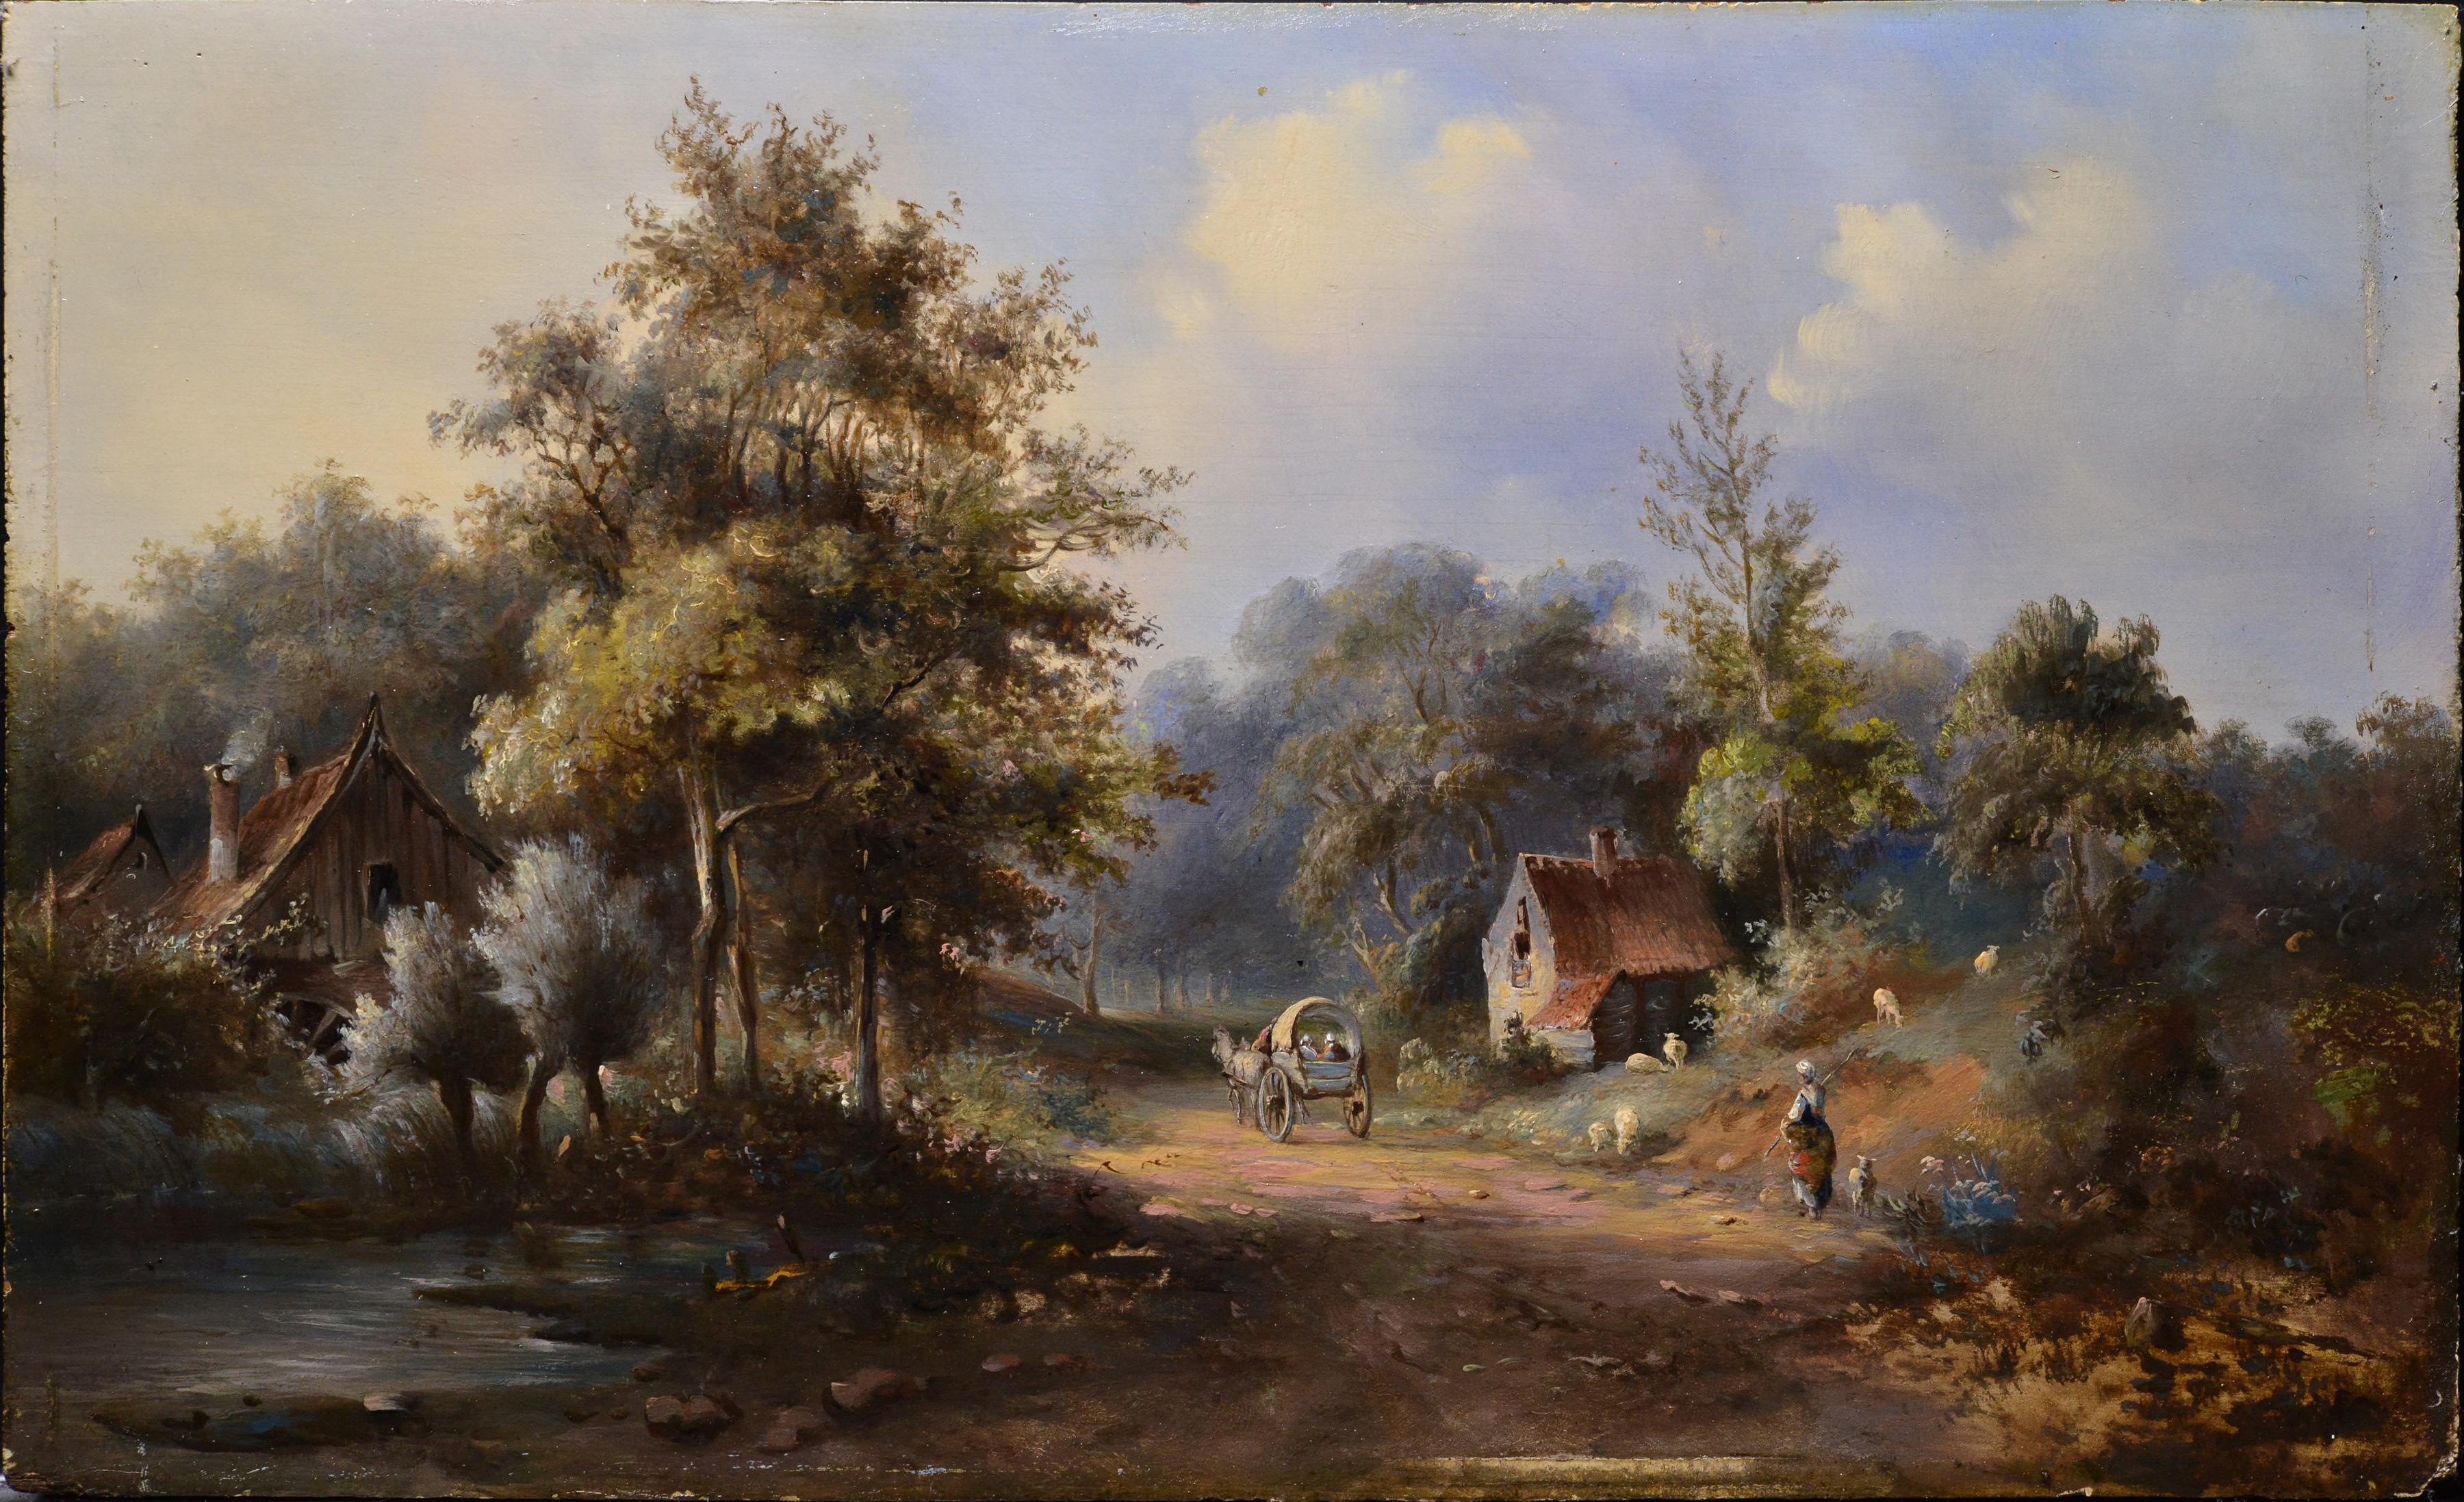 Pastoral Country Landscape Reisende auf einer Waldstraße, Ölgemälde, 19. Jahrhundert – Painting von Pavel Pavlovich Dzhogin